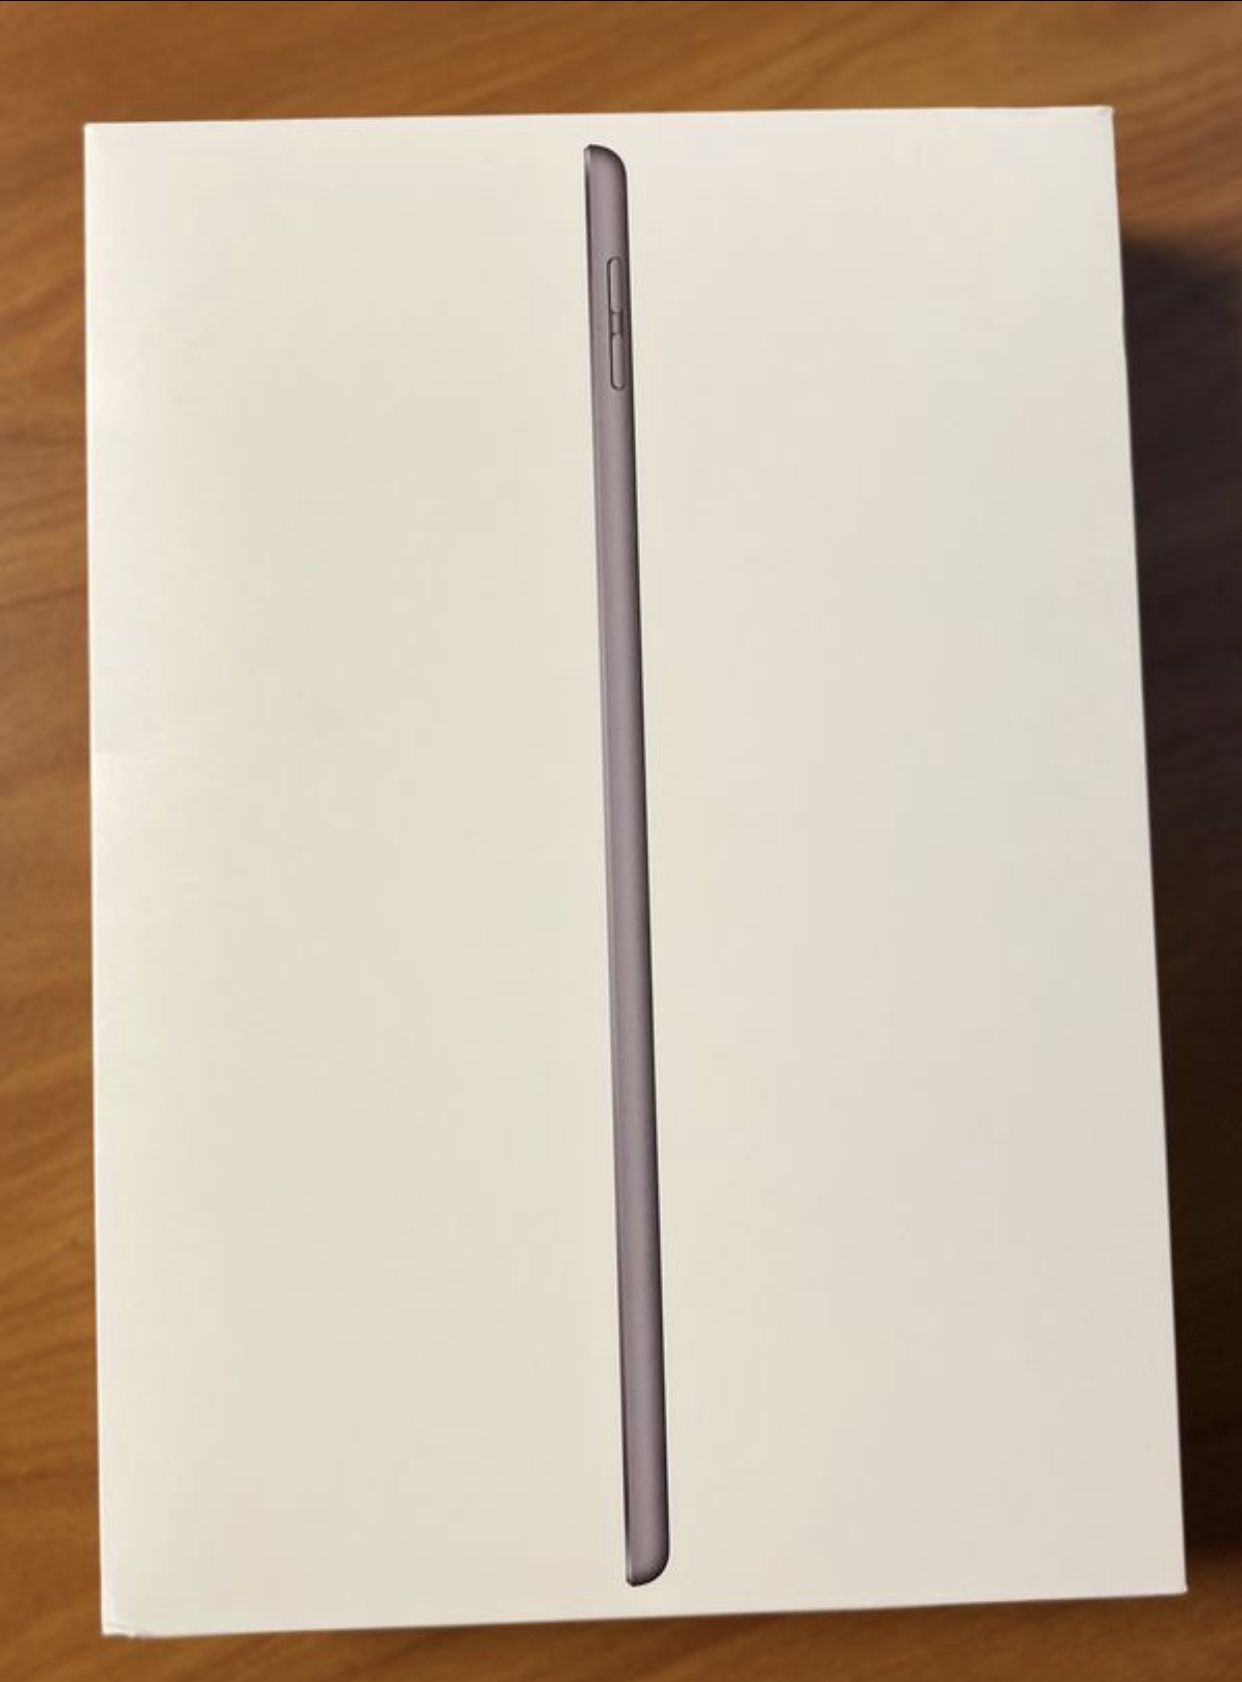 iPad 7th Gen, 128gb (Brand new) w/ Apple Pencil